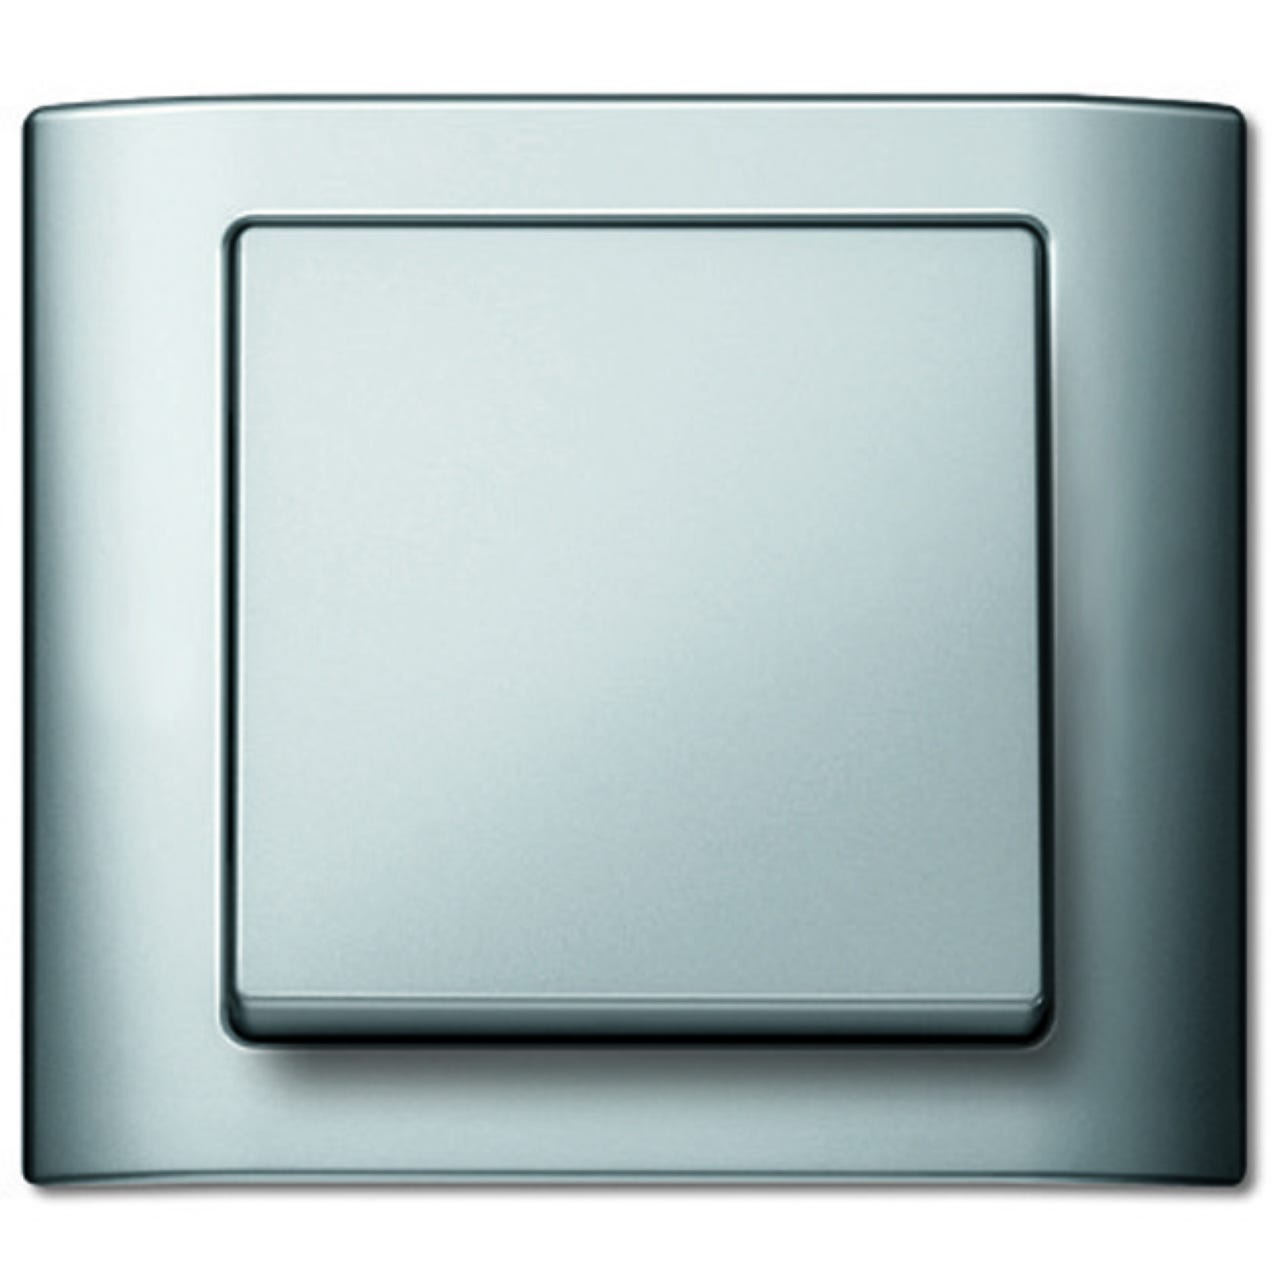 plaque - 1 poste - aqua - aluminium - schneider electric mtn400160 0